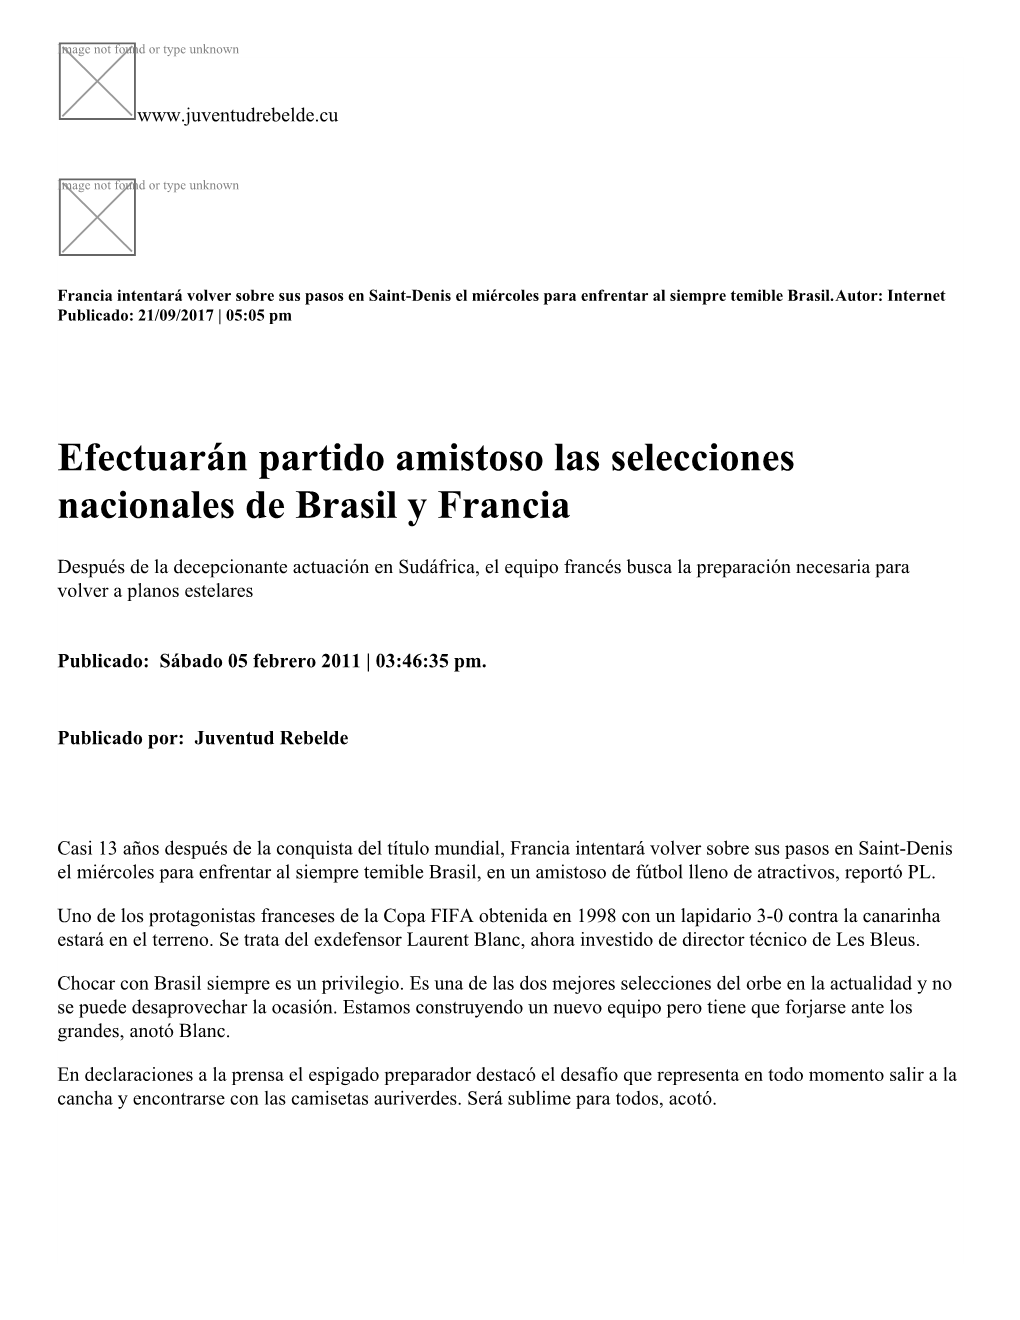 Efectuarán Partido Amistoso Las Selecciones Nacionales De Brasil Y Francia